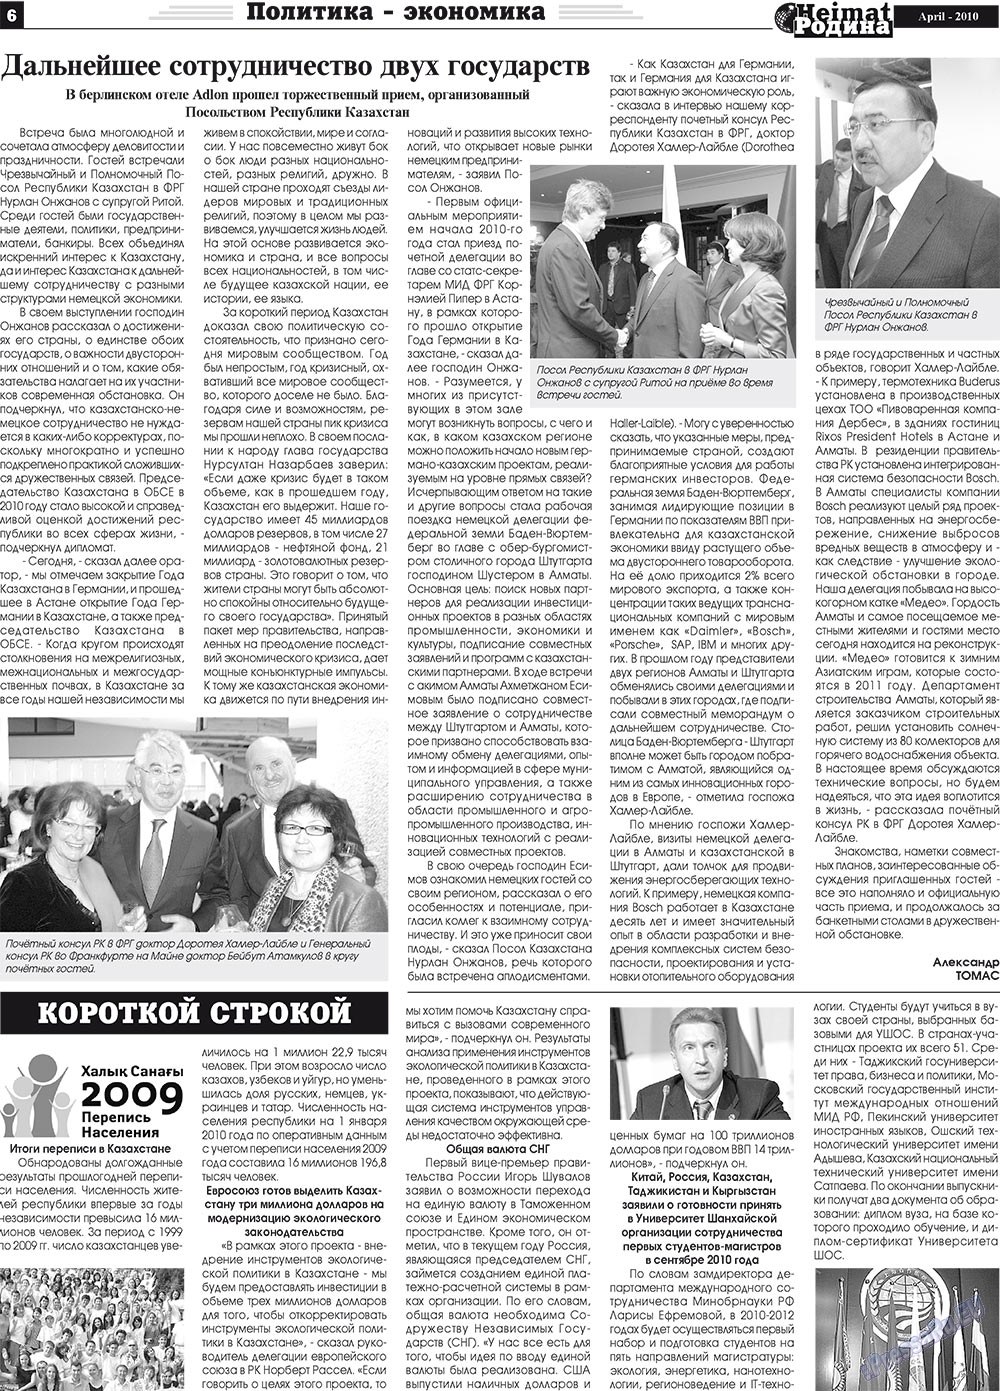 Heimat-Родина (газета). 2010 год, номер 4, стр. 6